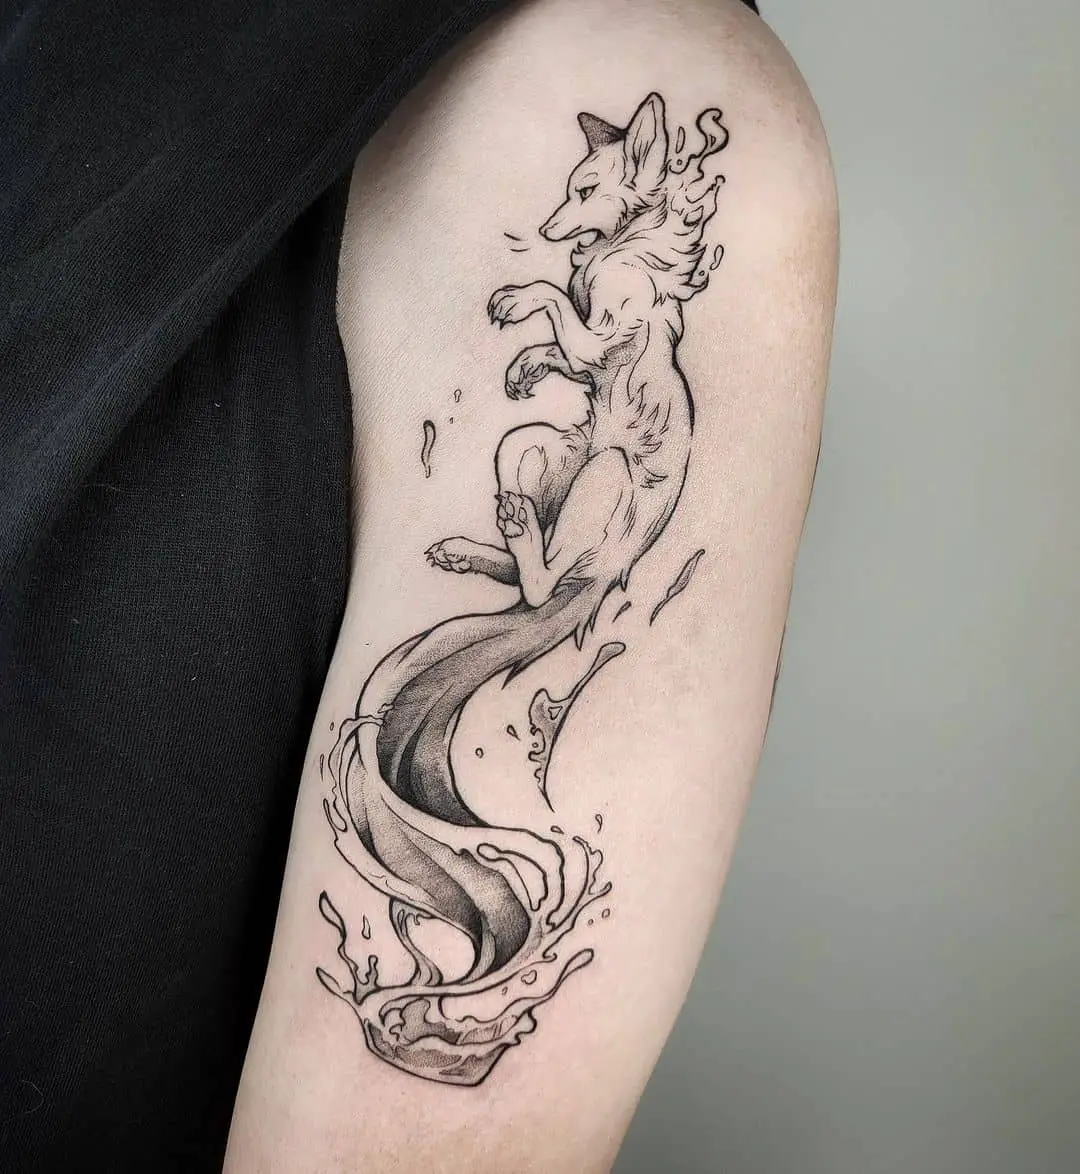 Simple fox tattoo design on upper arm by macy.tattoo